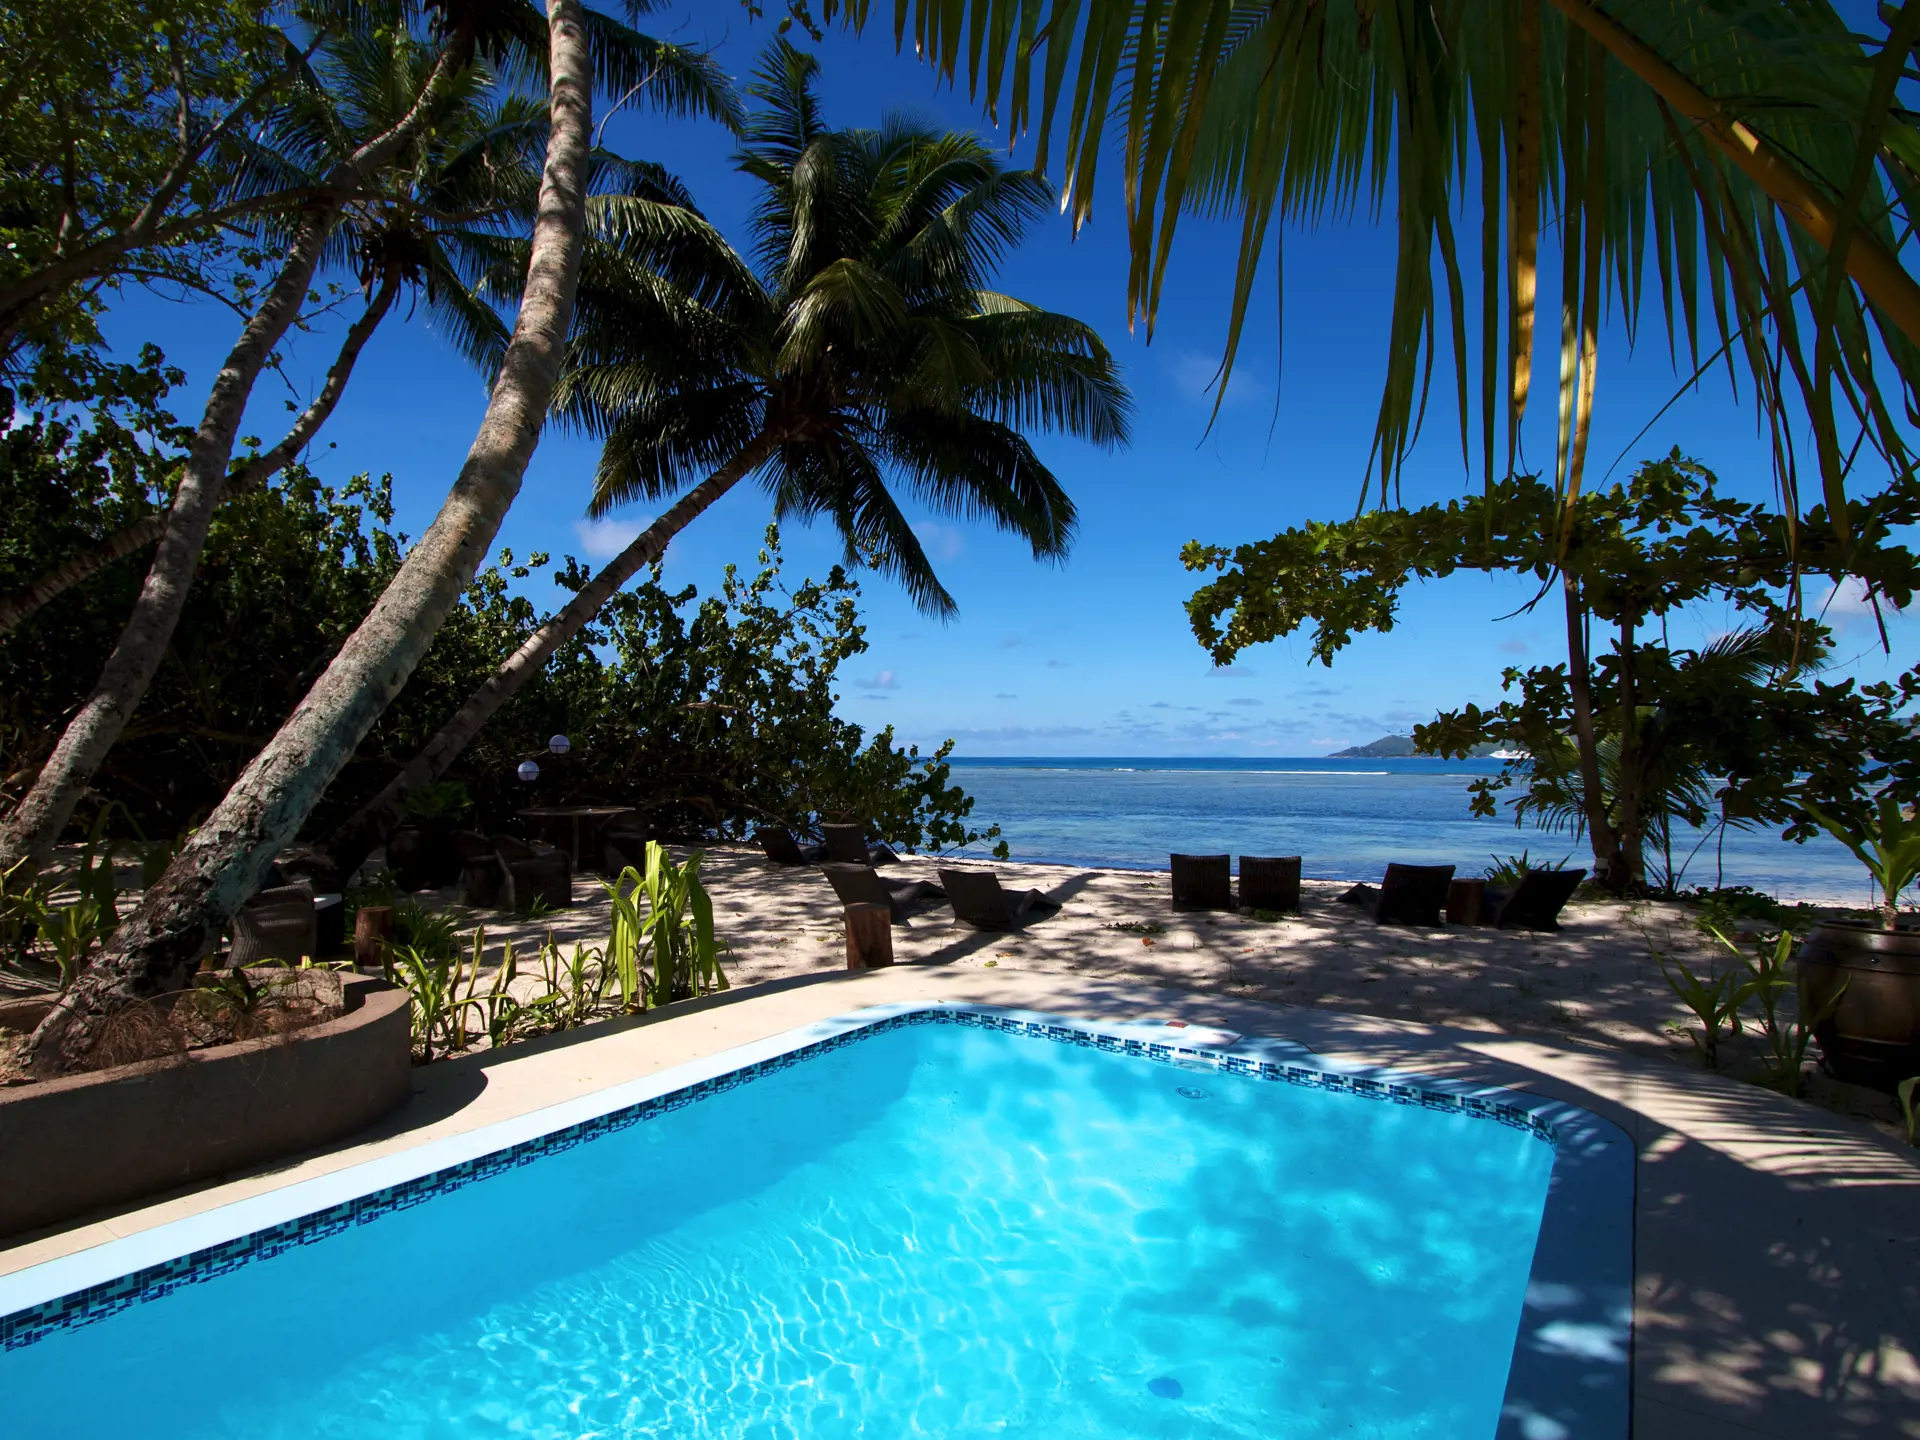 POOL ELLER STRAND - Nyd poolen i den tropiske have eller gør jer det behageligt i liggestolene på stranden.